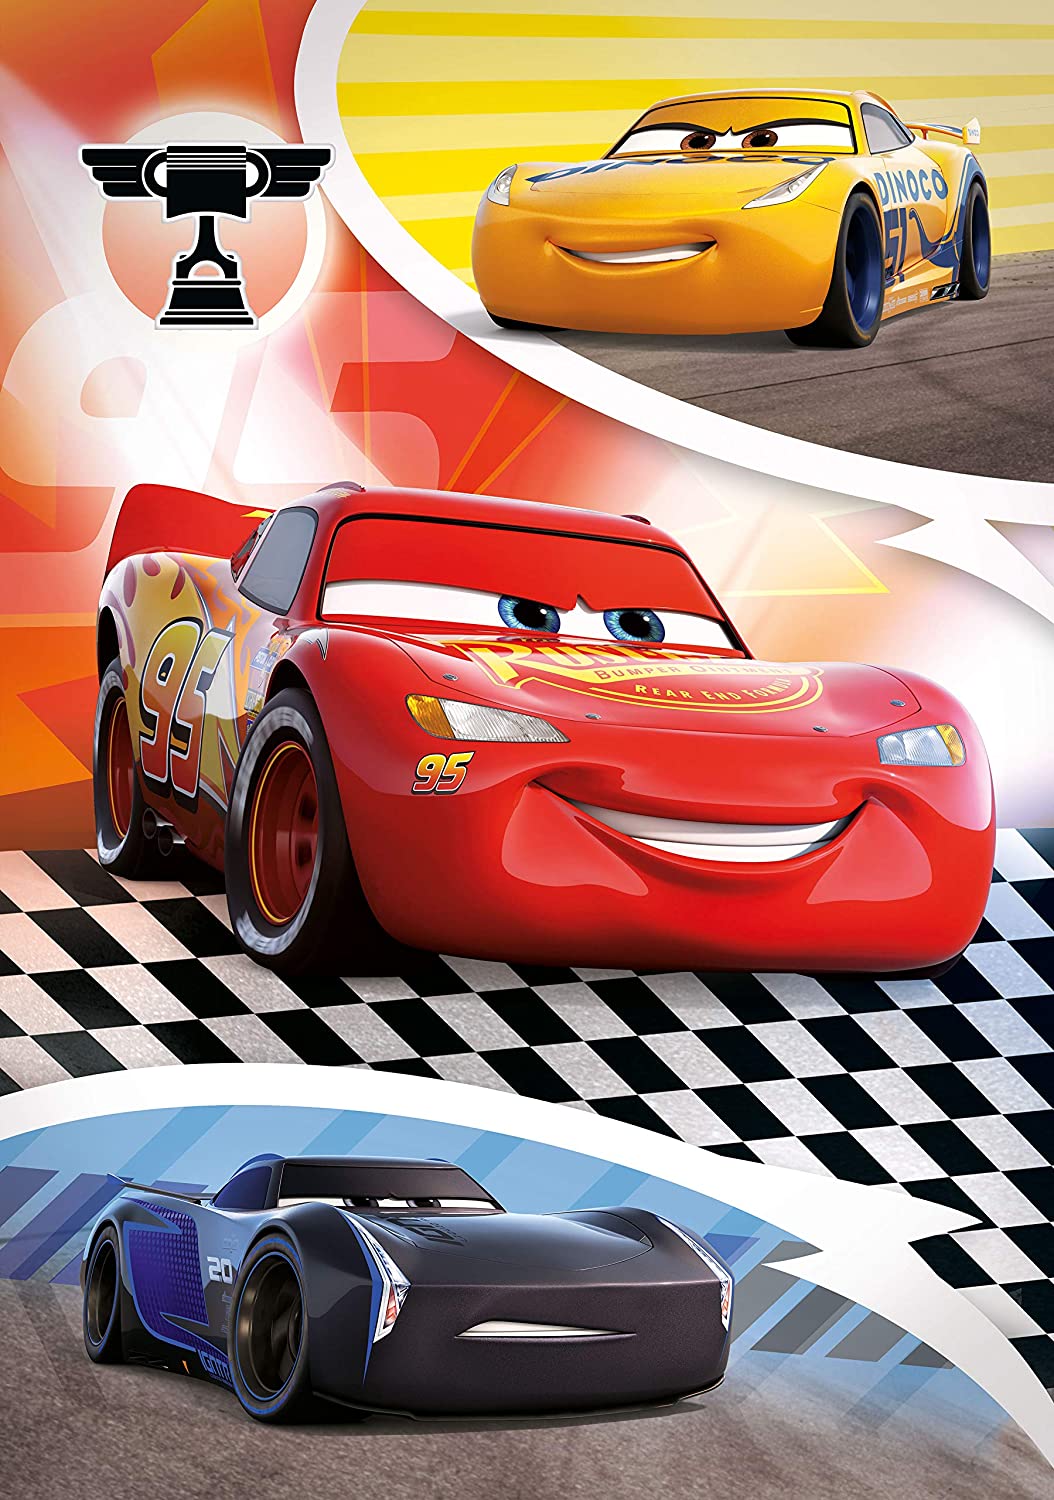 CLEMENTONI - Disney Pixar Cars 104 Pieces + 3D Puzzle Super Color